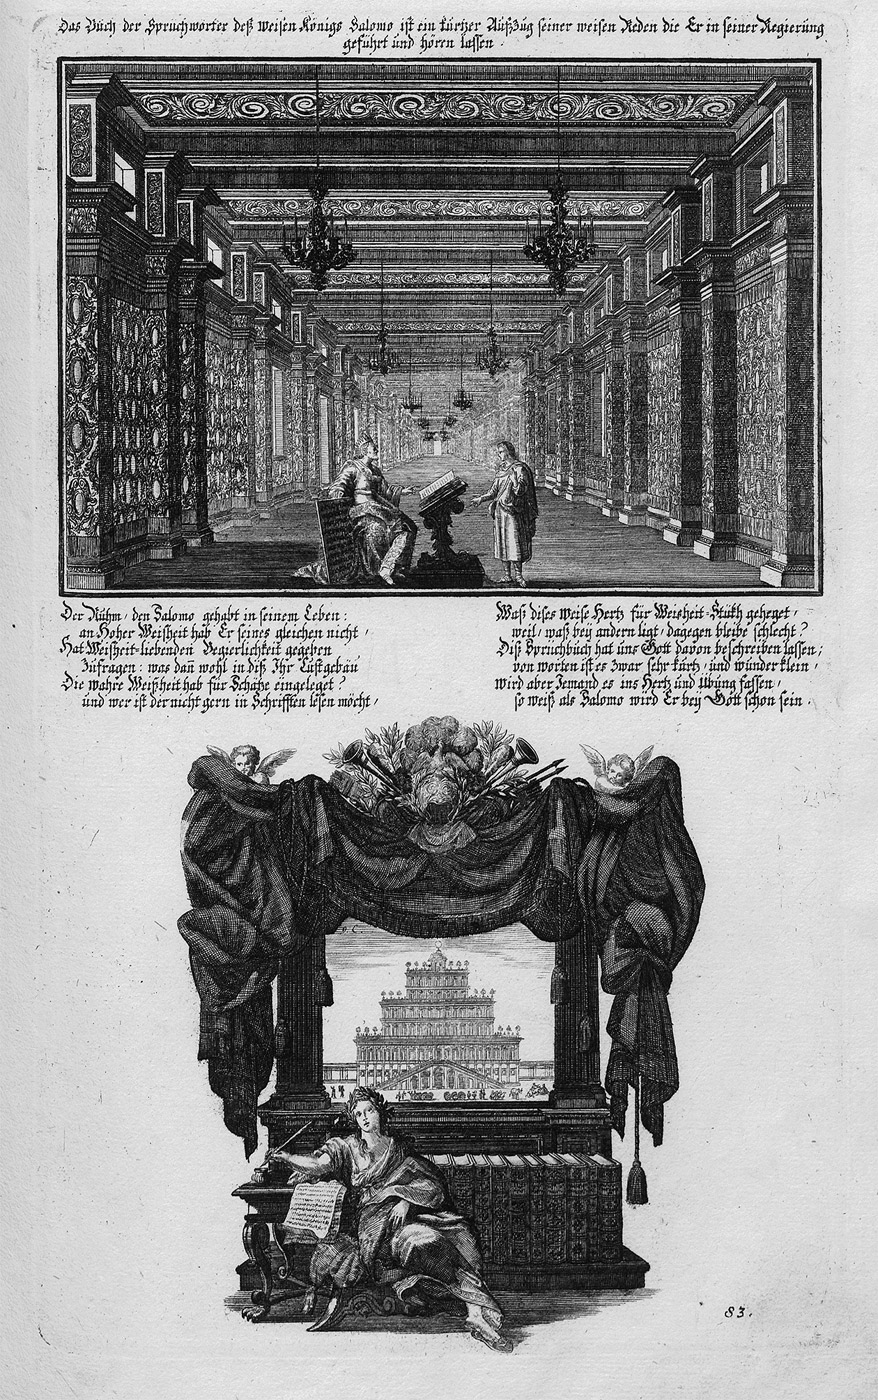 Lot 1241, Auction  115, Krauss, Johann Ulrich, Historischer Bilder Bibel